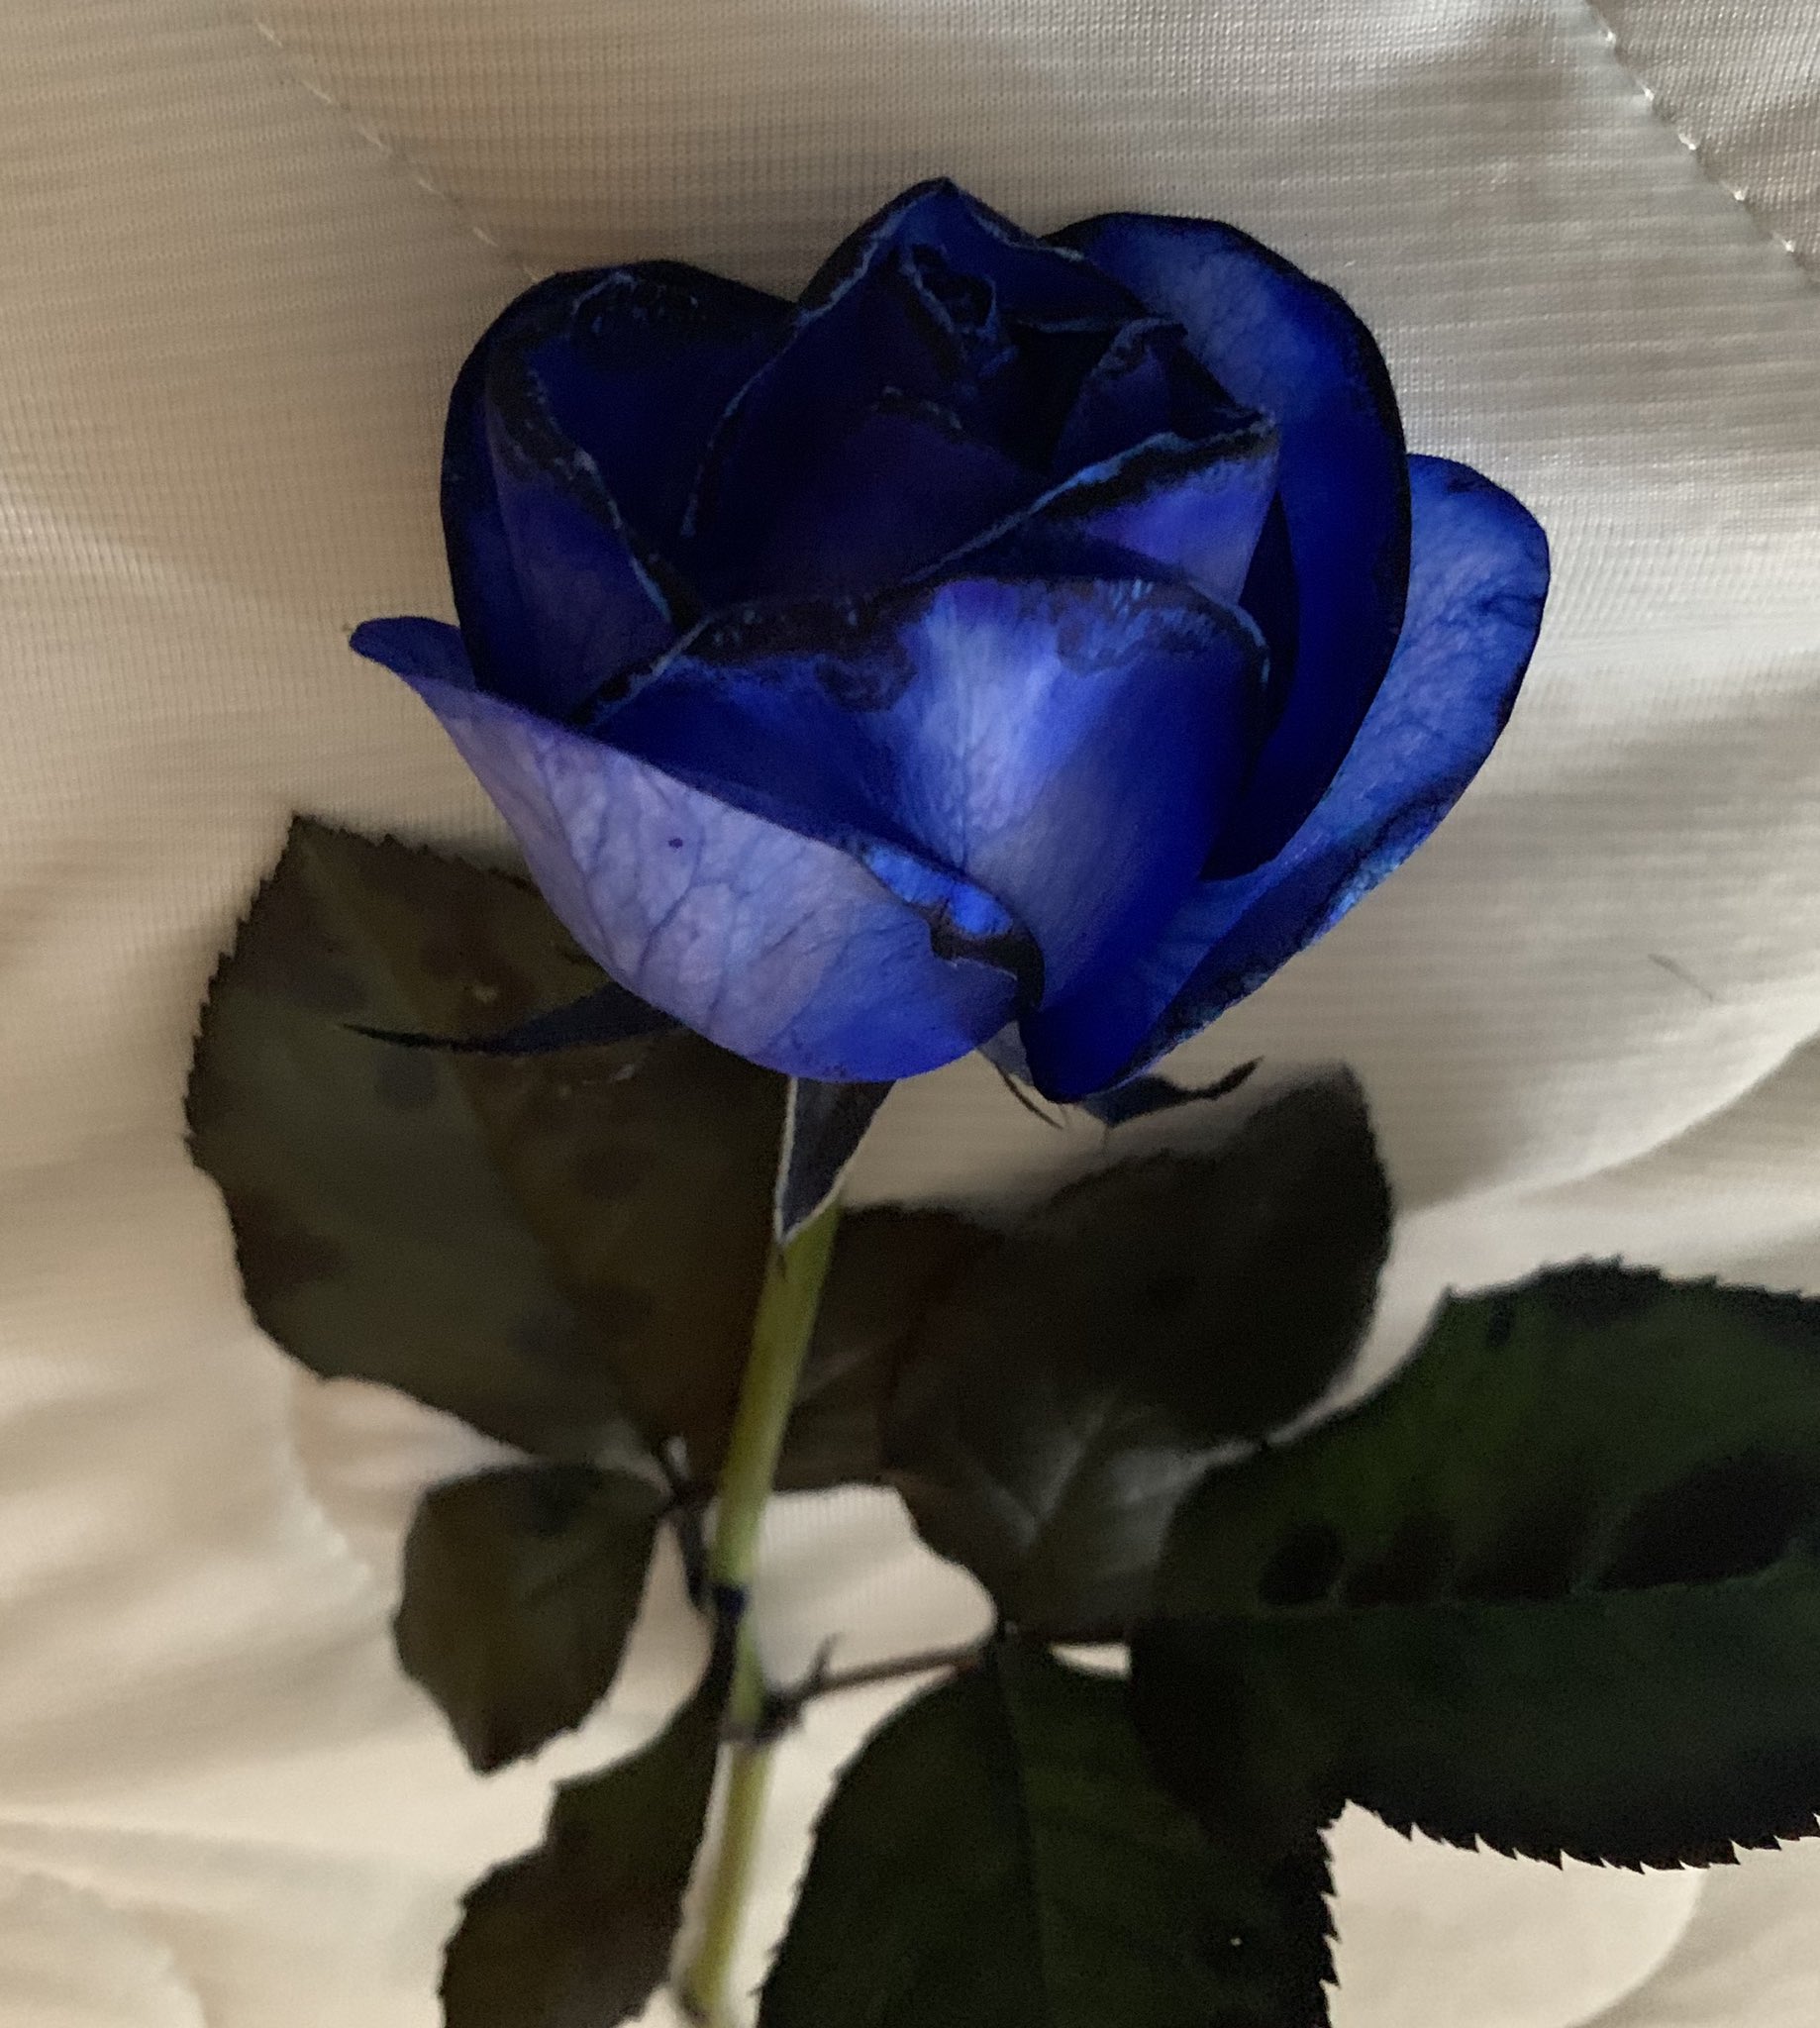 Yoiche 青い薔薇の花言葉 は 夢かなう かつては不可能 存在しないものなどマイナスイメージだったが 02年 日本の研究者たちが遺伝子の組み替えによって世界初の青いバラを誕生させ 花言葉も変わった イエローモンキー再集結など今までいくつもの夢